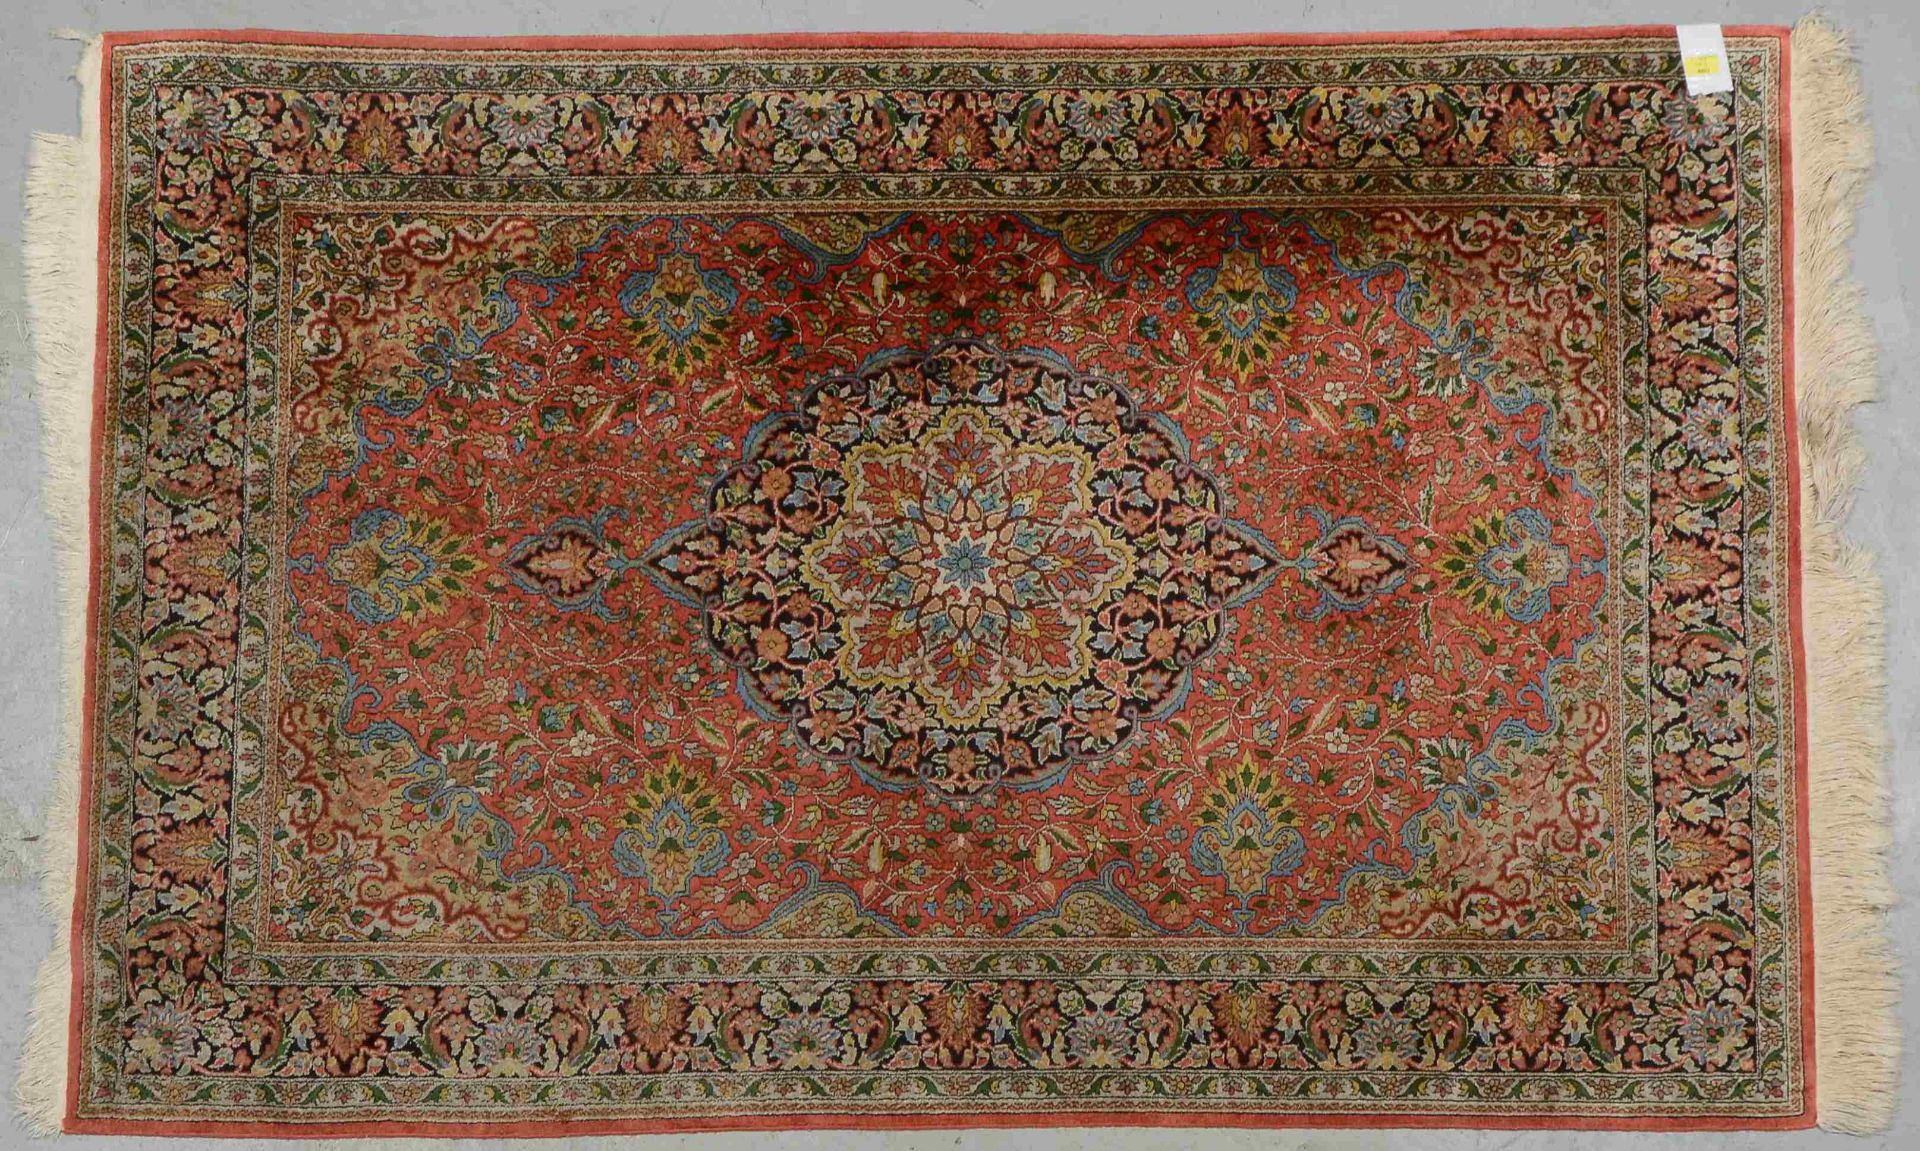 Kaschmir-Orientteppich, Seide, feste Knüpfung, ringsum komplett, Flor in guter Erhaltung; Maße 188 x